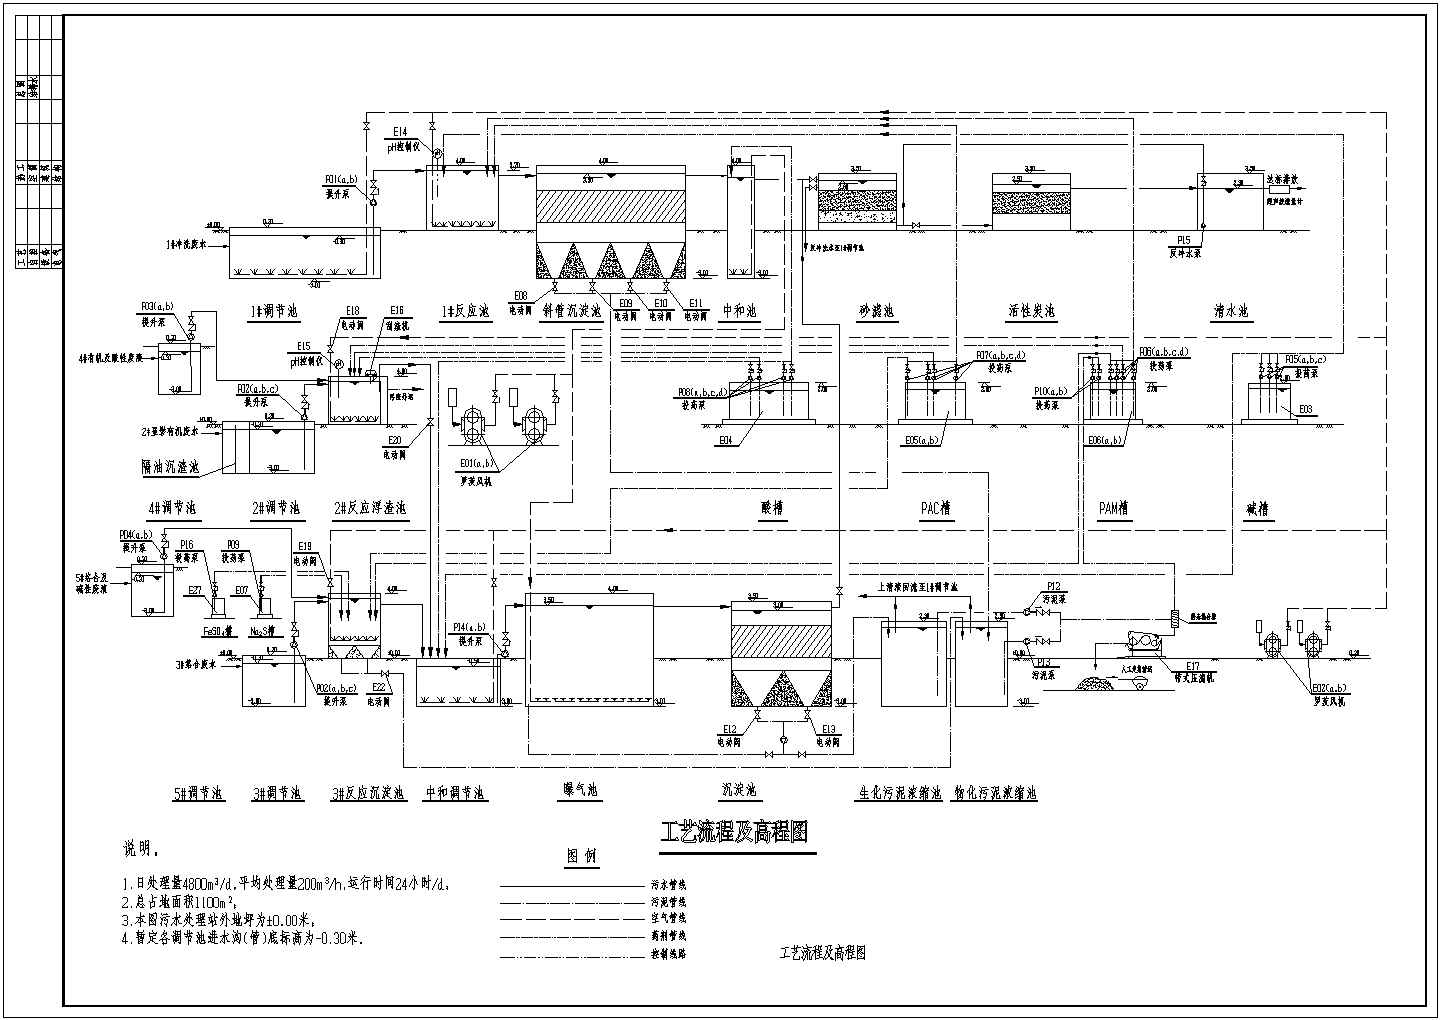 某印刷电路板厂污水水解酸化处理流程设计详细方案CAD图纸